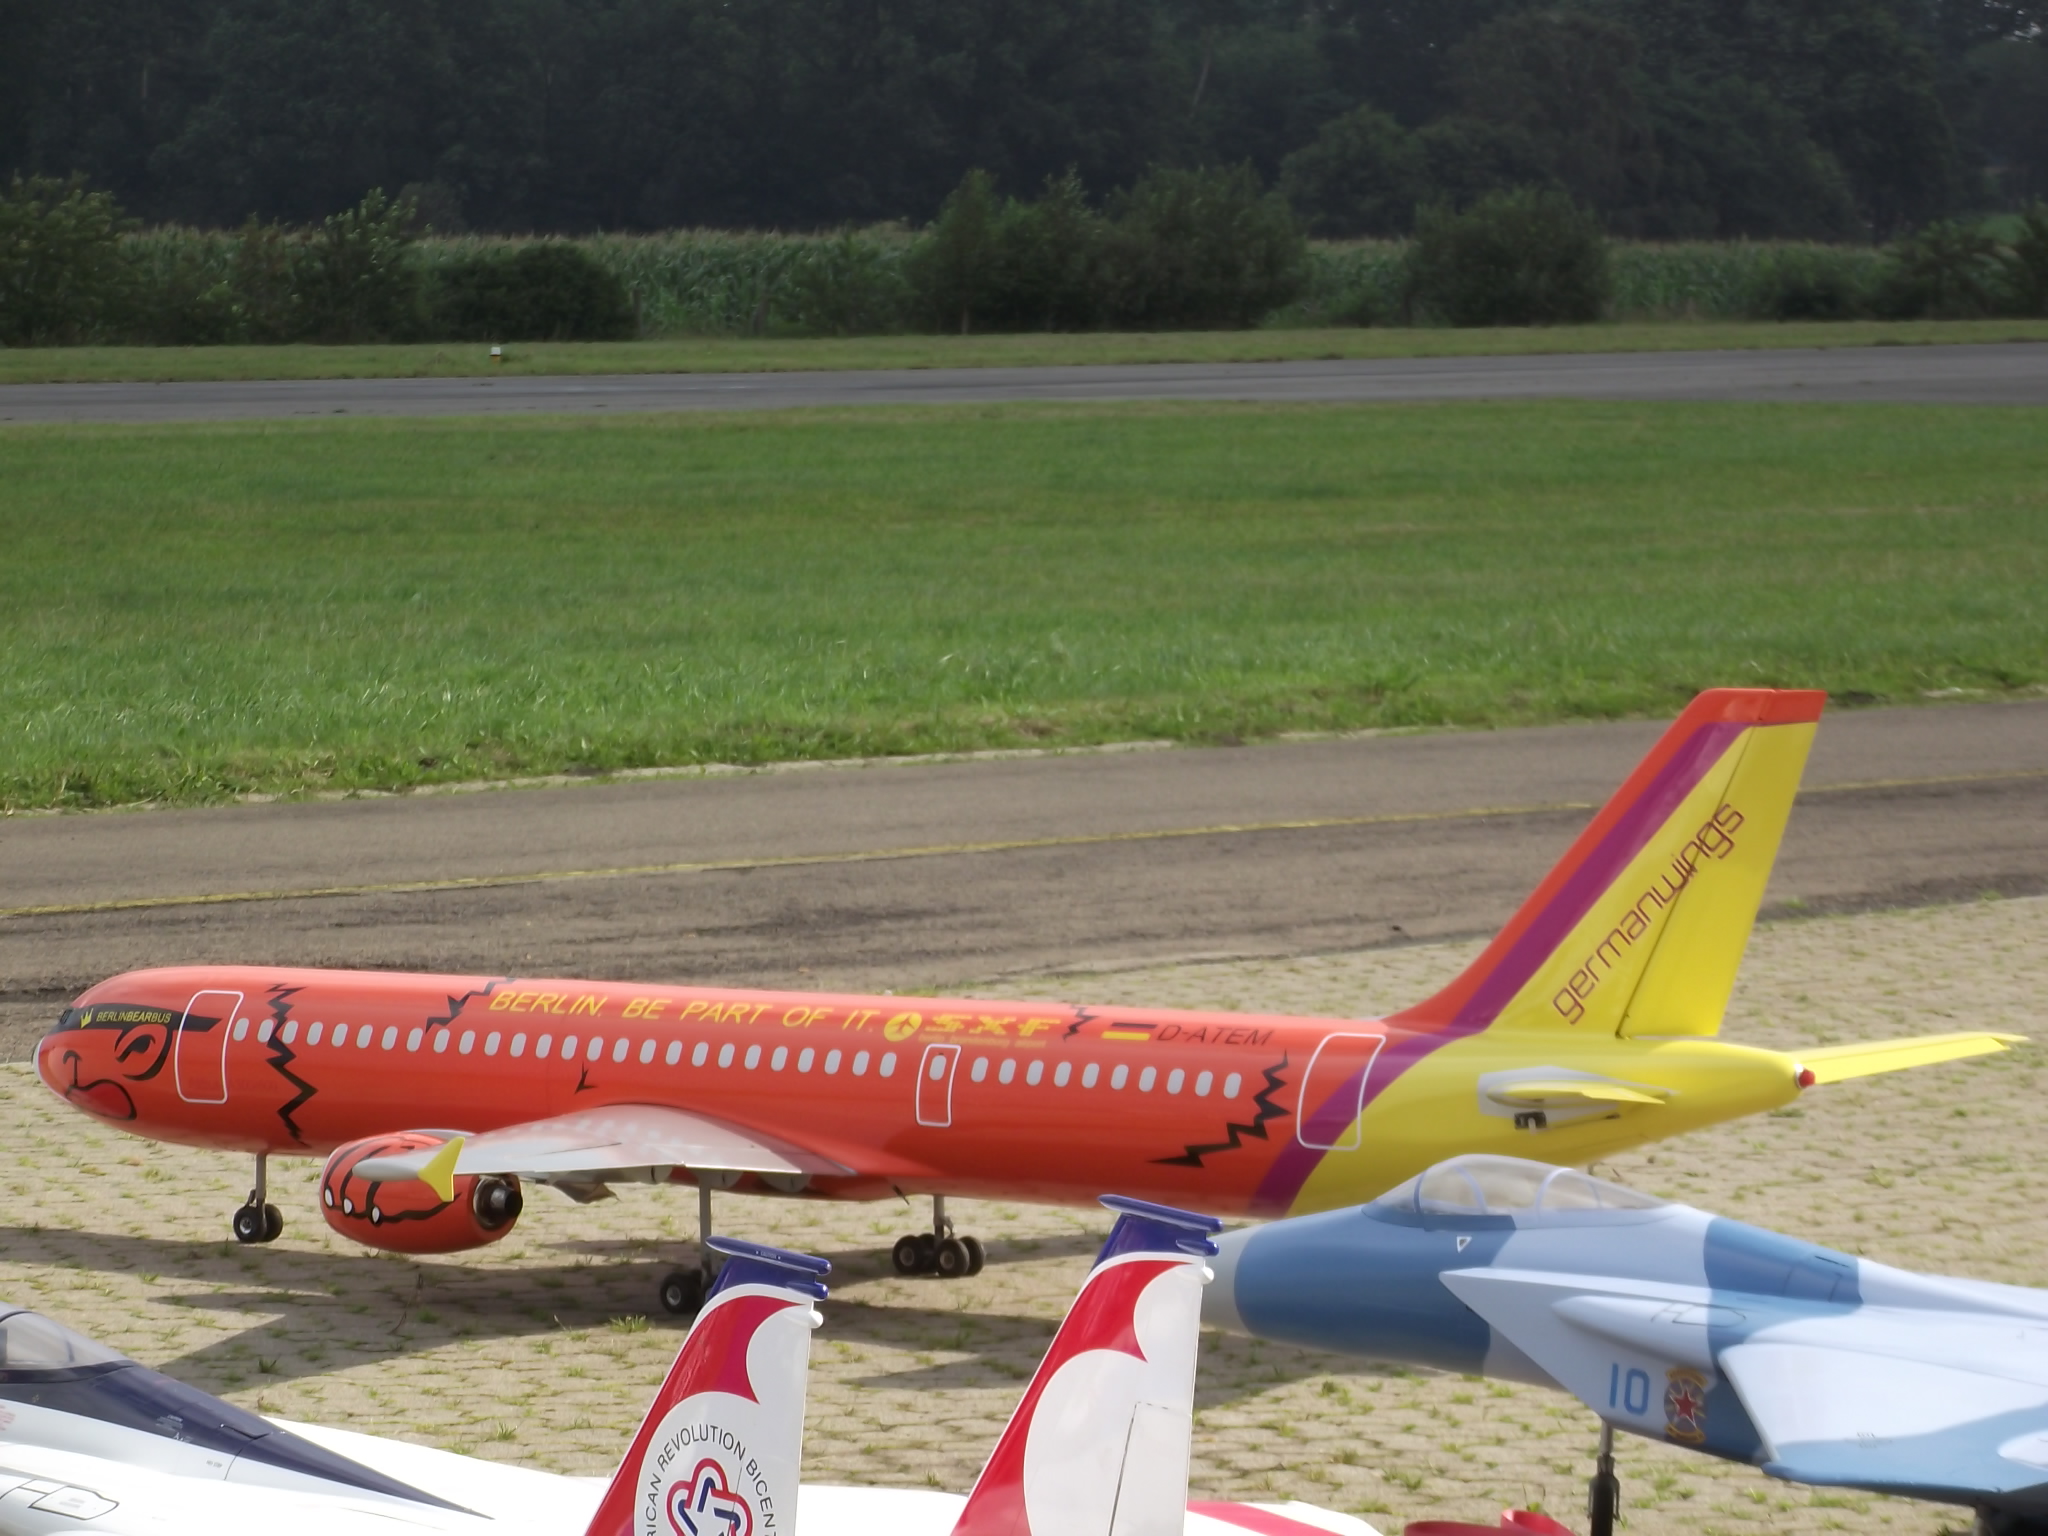 Jet-Flugtage in Ganderkesee - ganz viele verschieden Flugzeugtypen werden hier präsentiert wie hier eine GERMANWINGS Maschine - gibt es die airline noch?